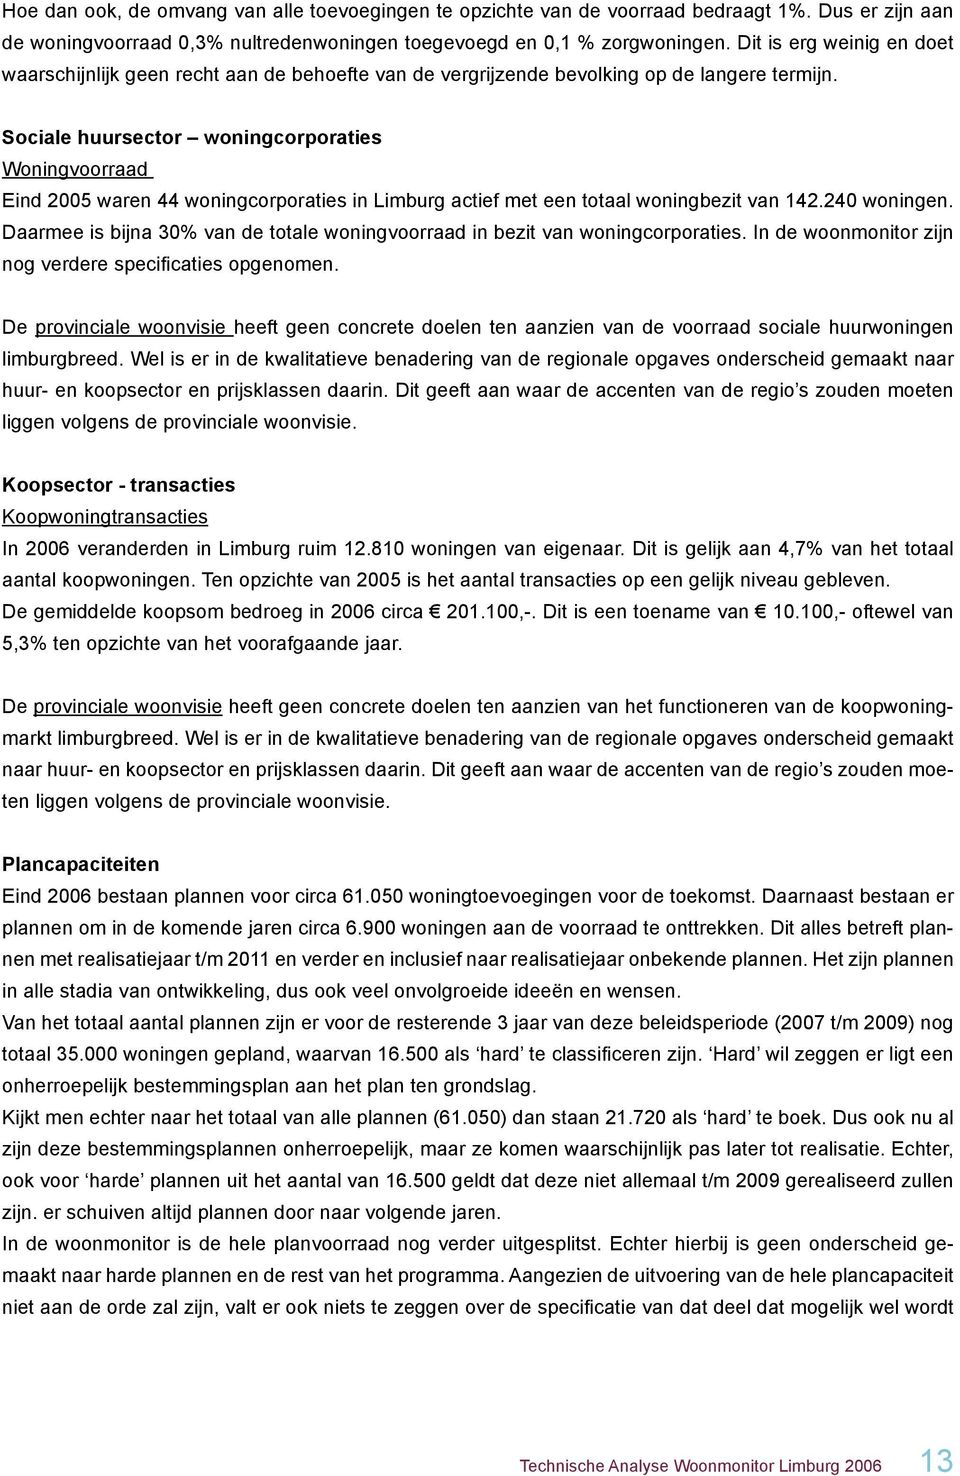 Sociale huursector woningcorporaties Woningvoorraad Eind 2005 waren 44 woningcorporaties in Limburg actief met een totaal woningbezit van 142.240 woningen.